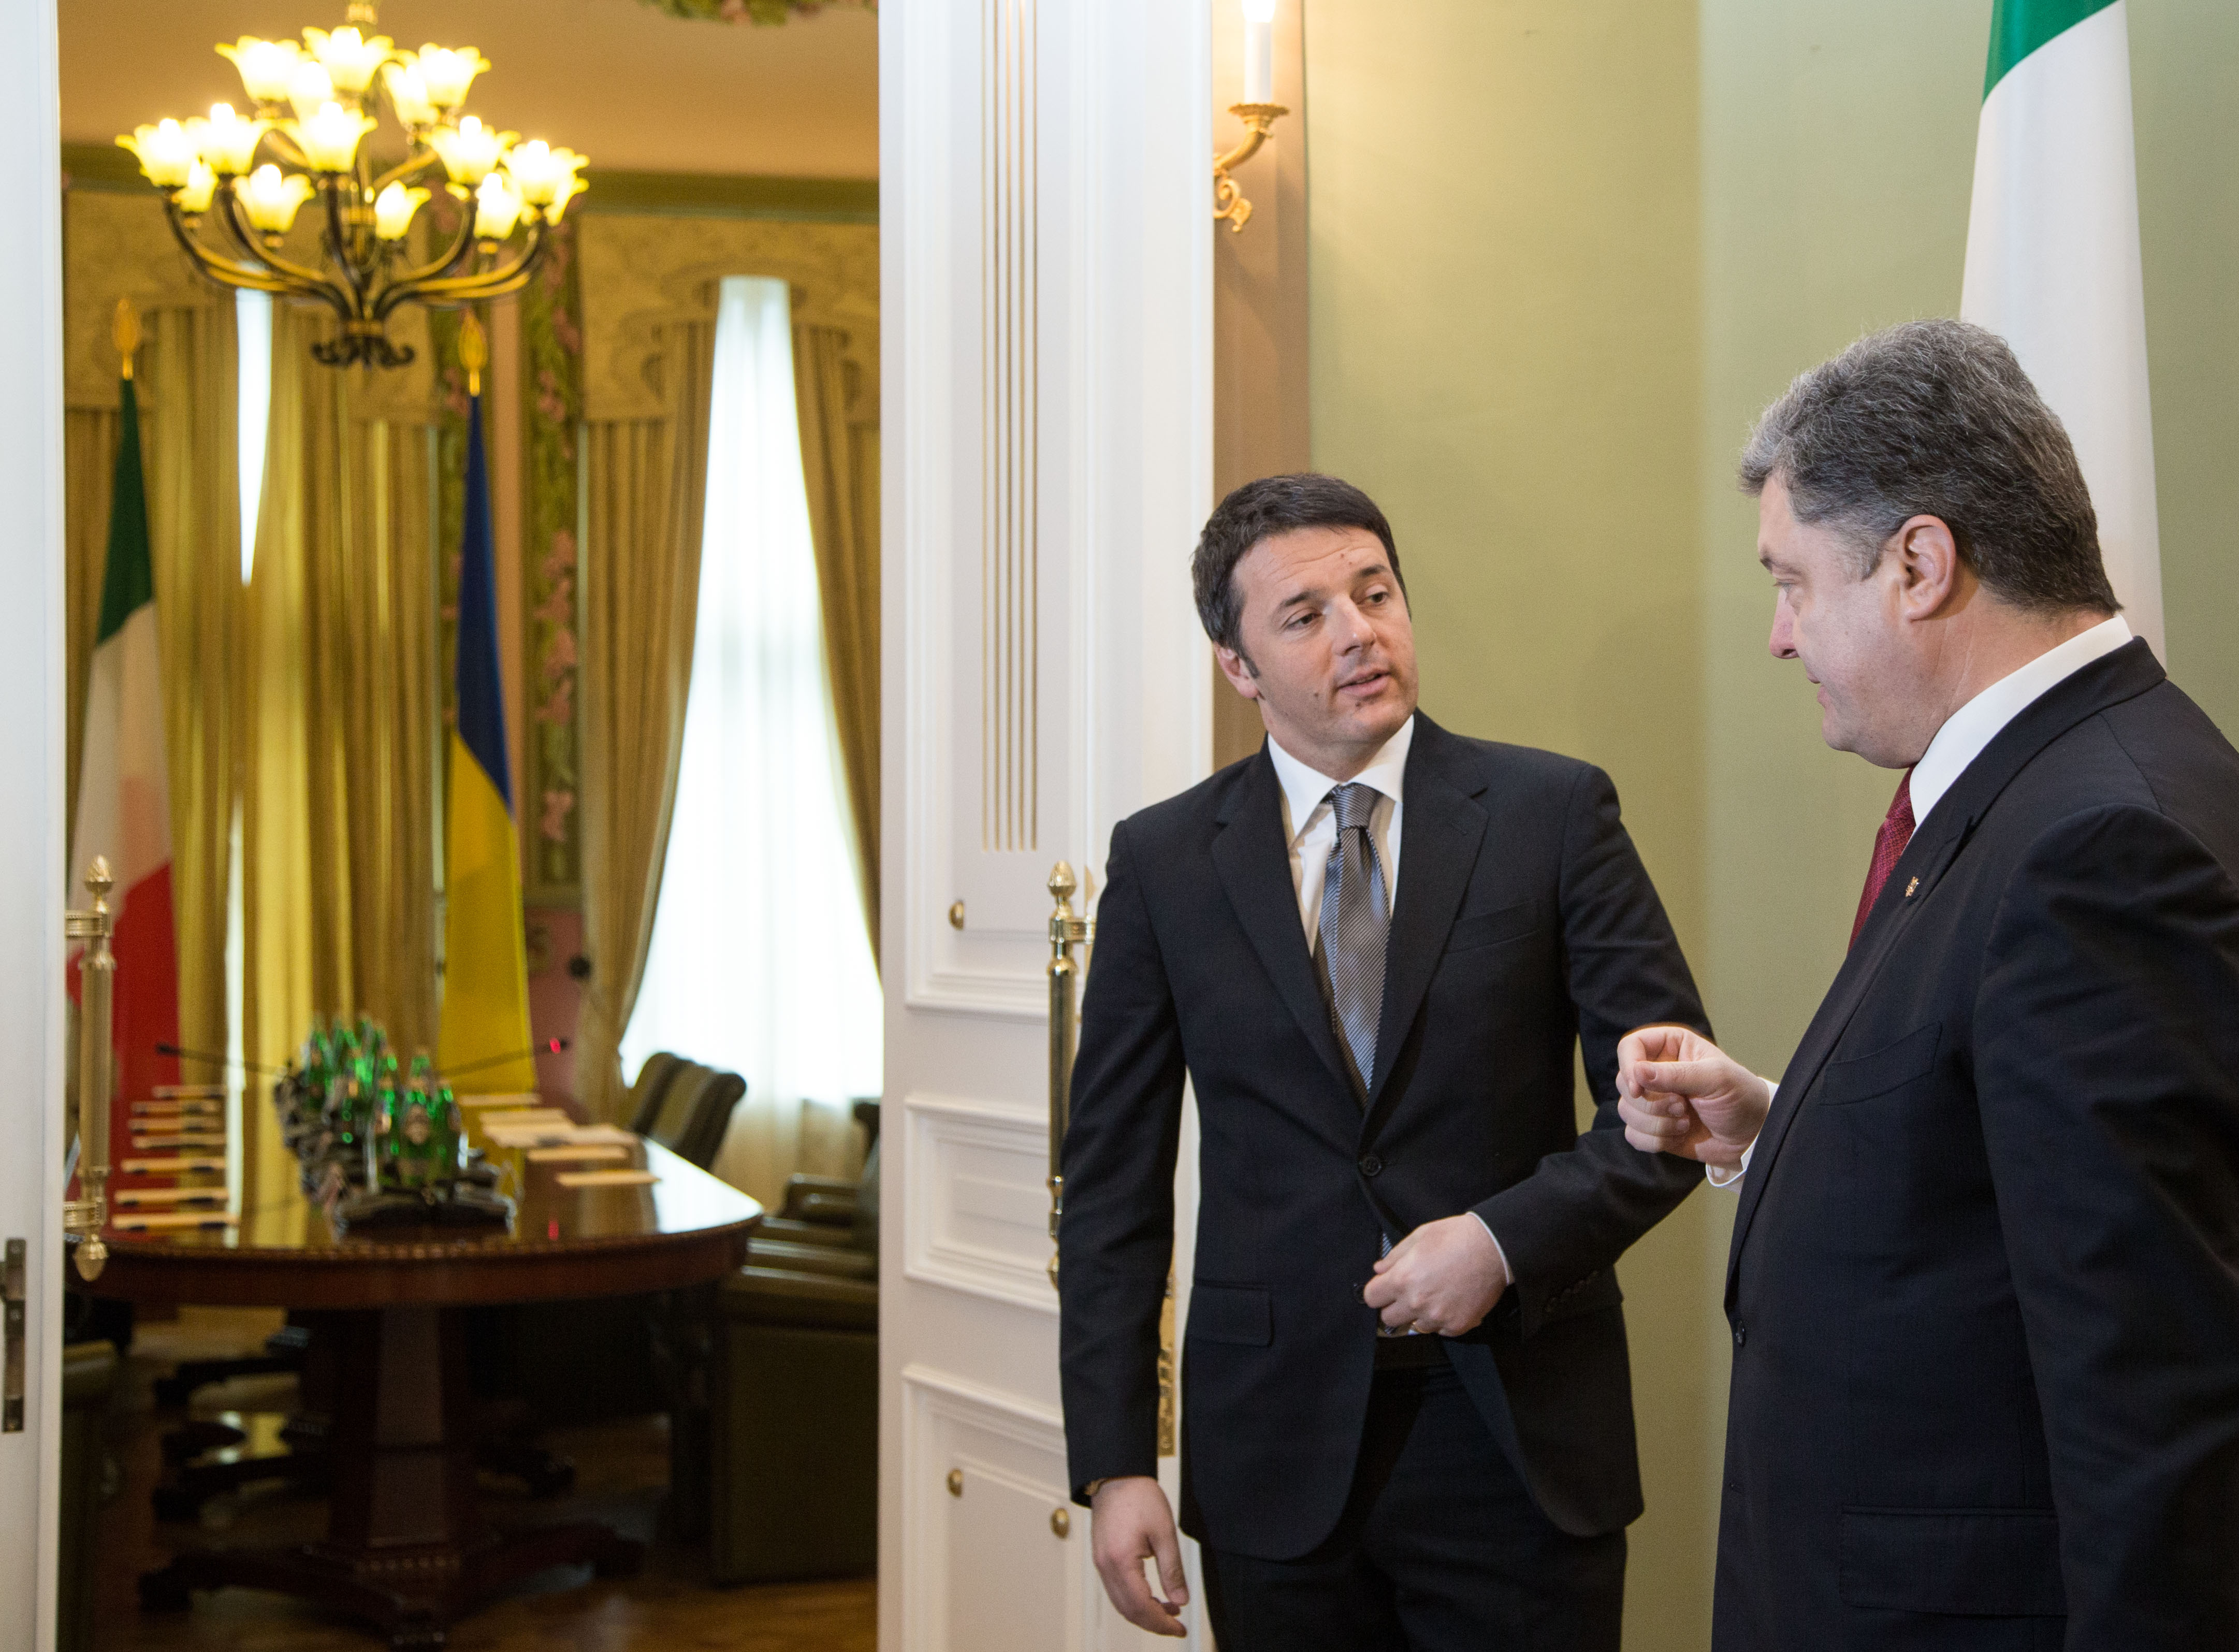 Голова італійської Ради міністрів Маттео Ренці (ліворуч) у невимушеній обстановці доводив свою прихильність до України. Фото Михайла МAРКIВA 